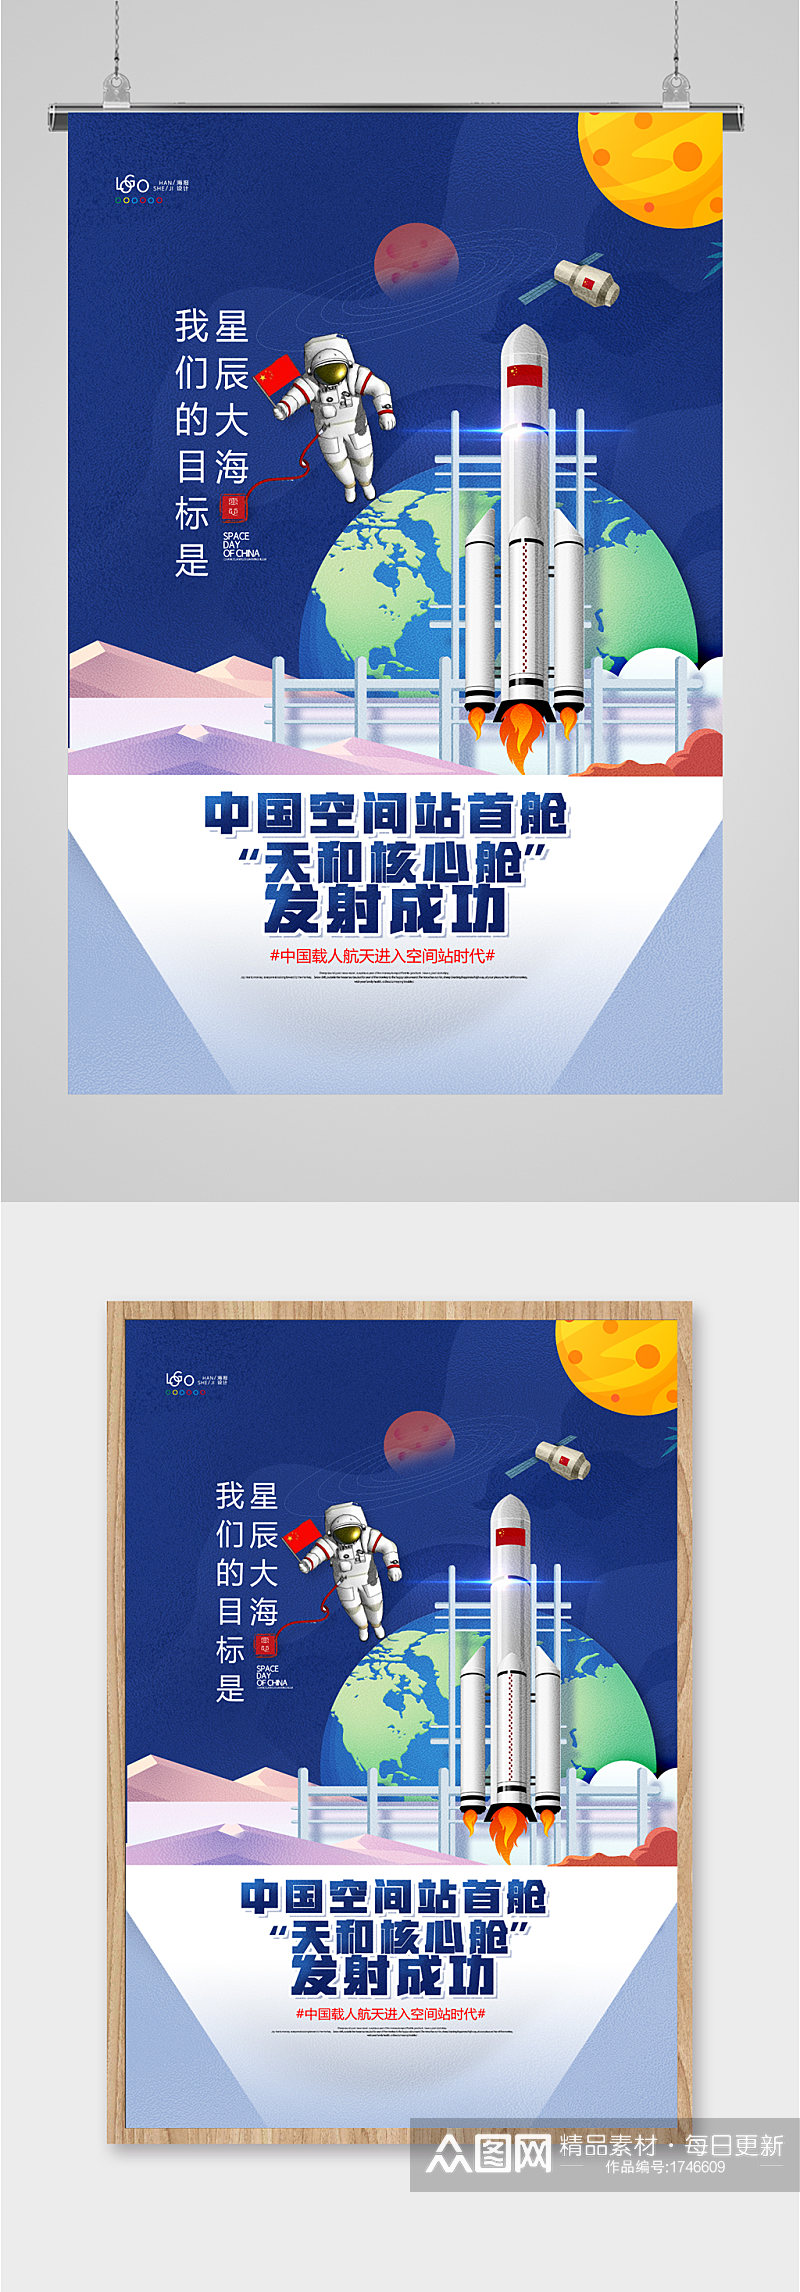 中国空间站核心航天神舟发射成功插画海报素材